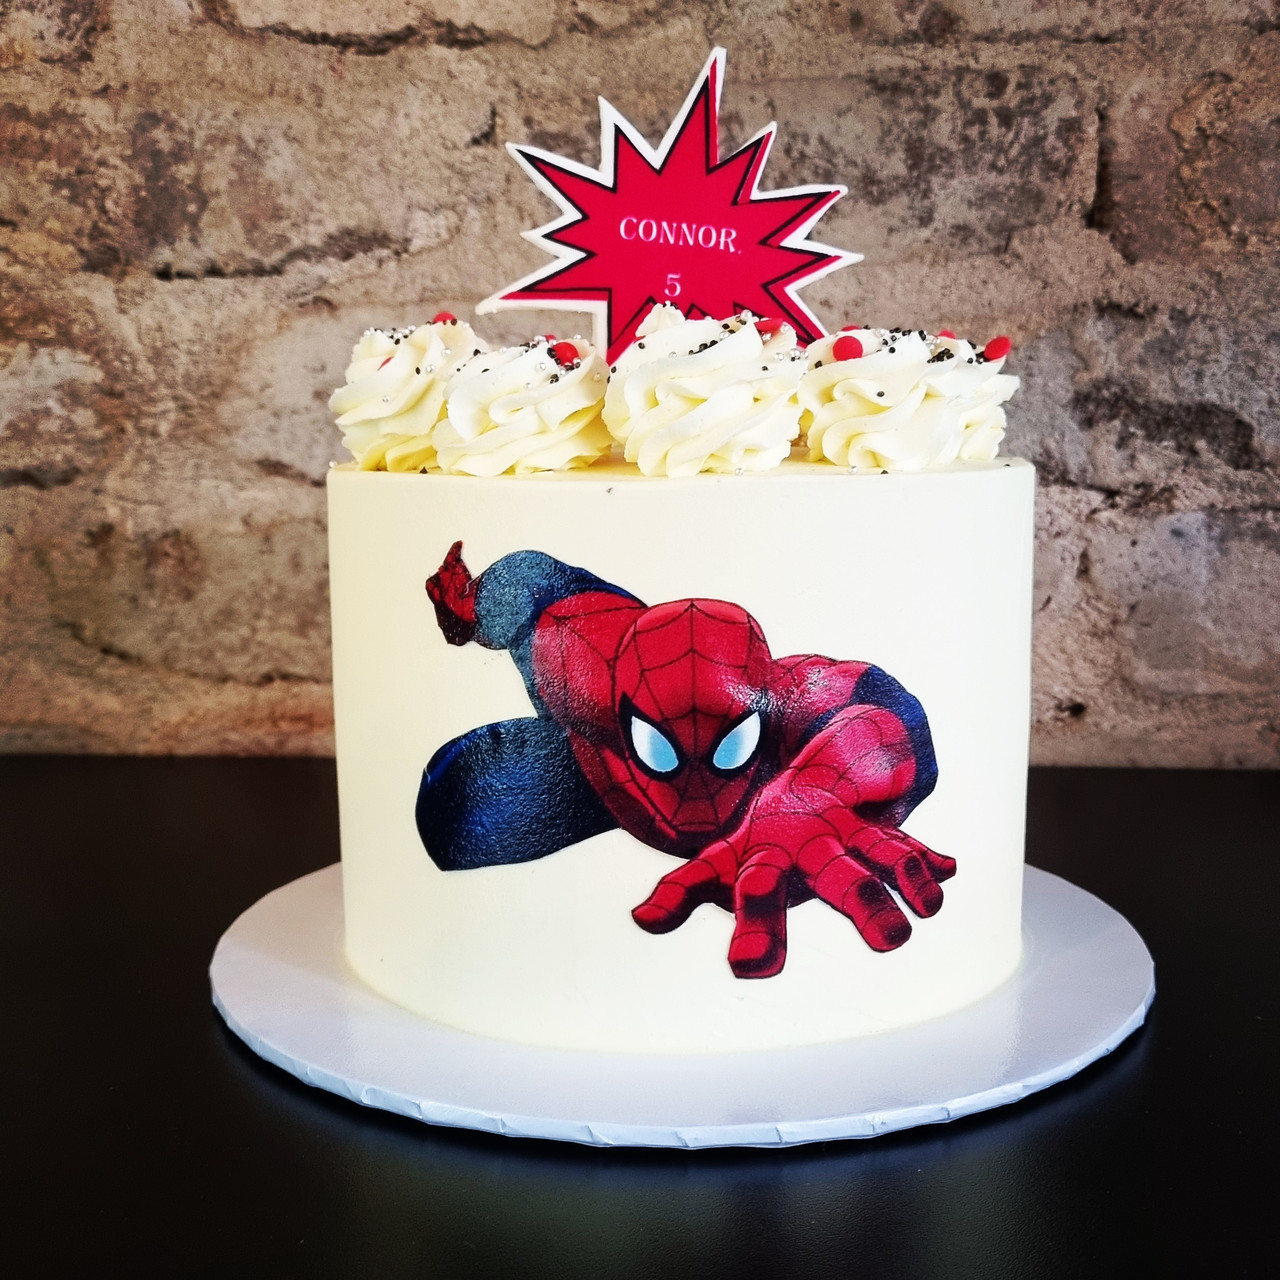 Spiderman Theme Cake For Boys Birthday Cakes 179 - Cake Square Chennai |  Cake Shop in Chennai